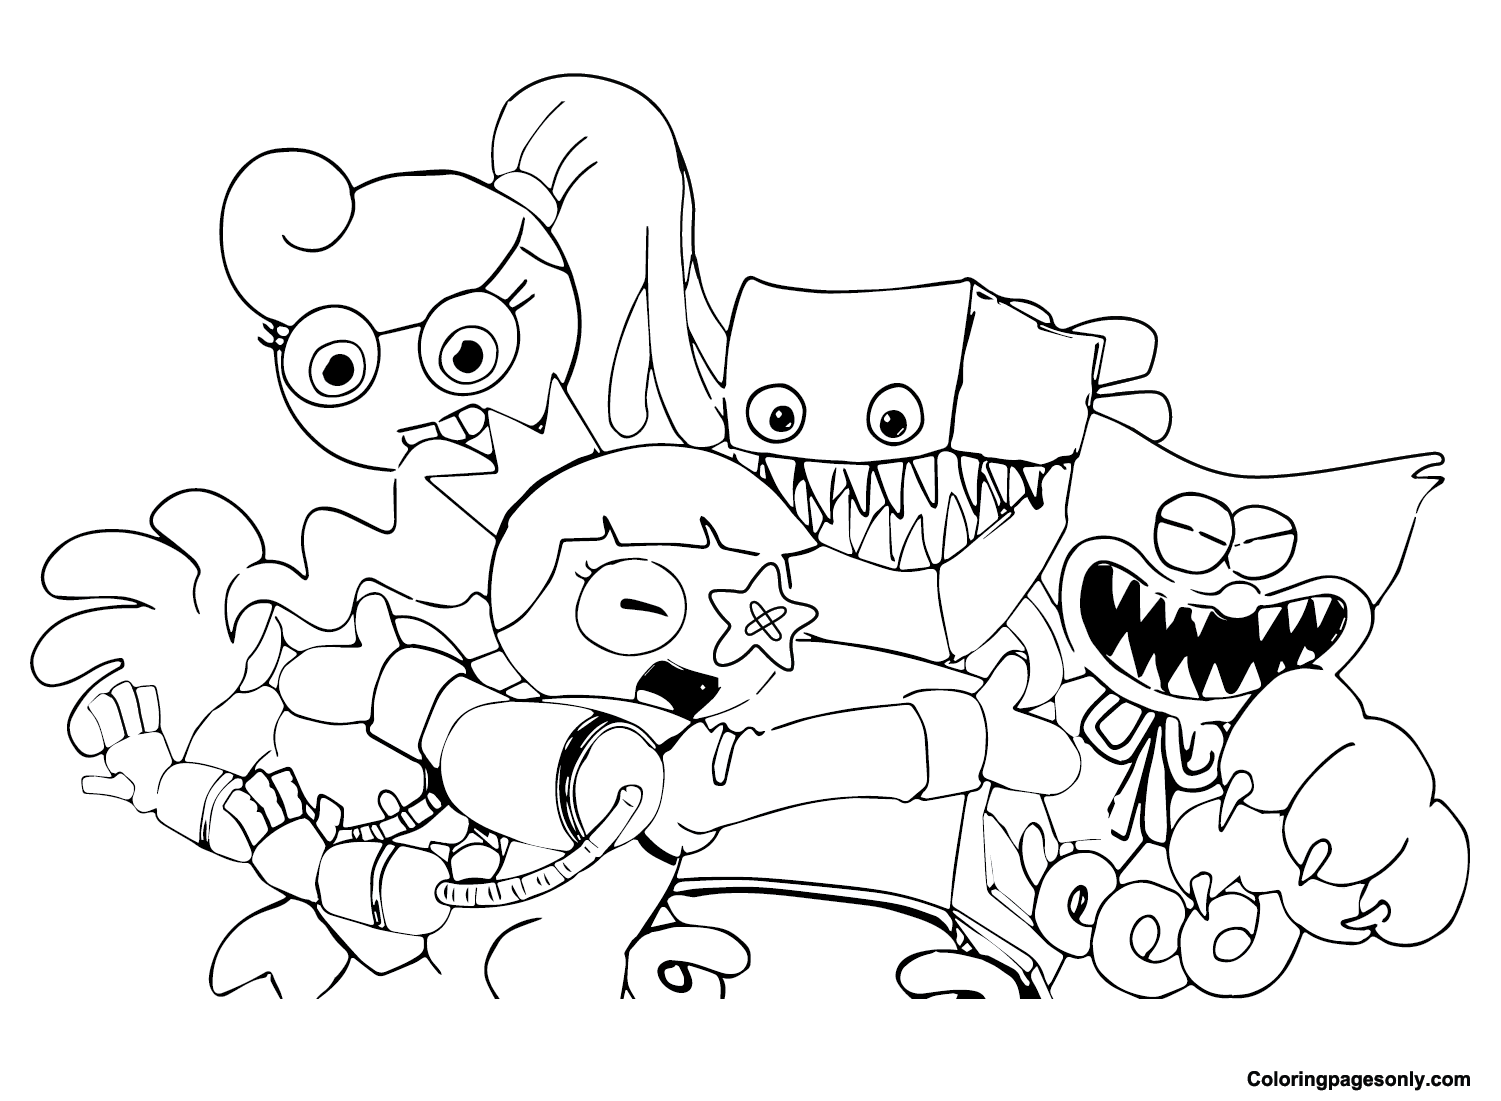 Desenhos de Boxy Boo de Poppy Playtime para Colorir e Imprimir